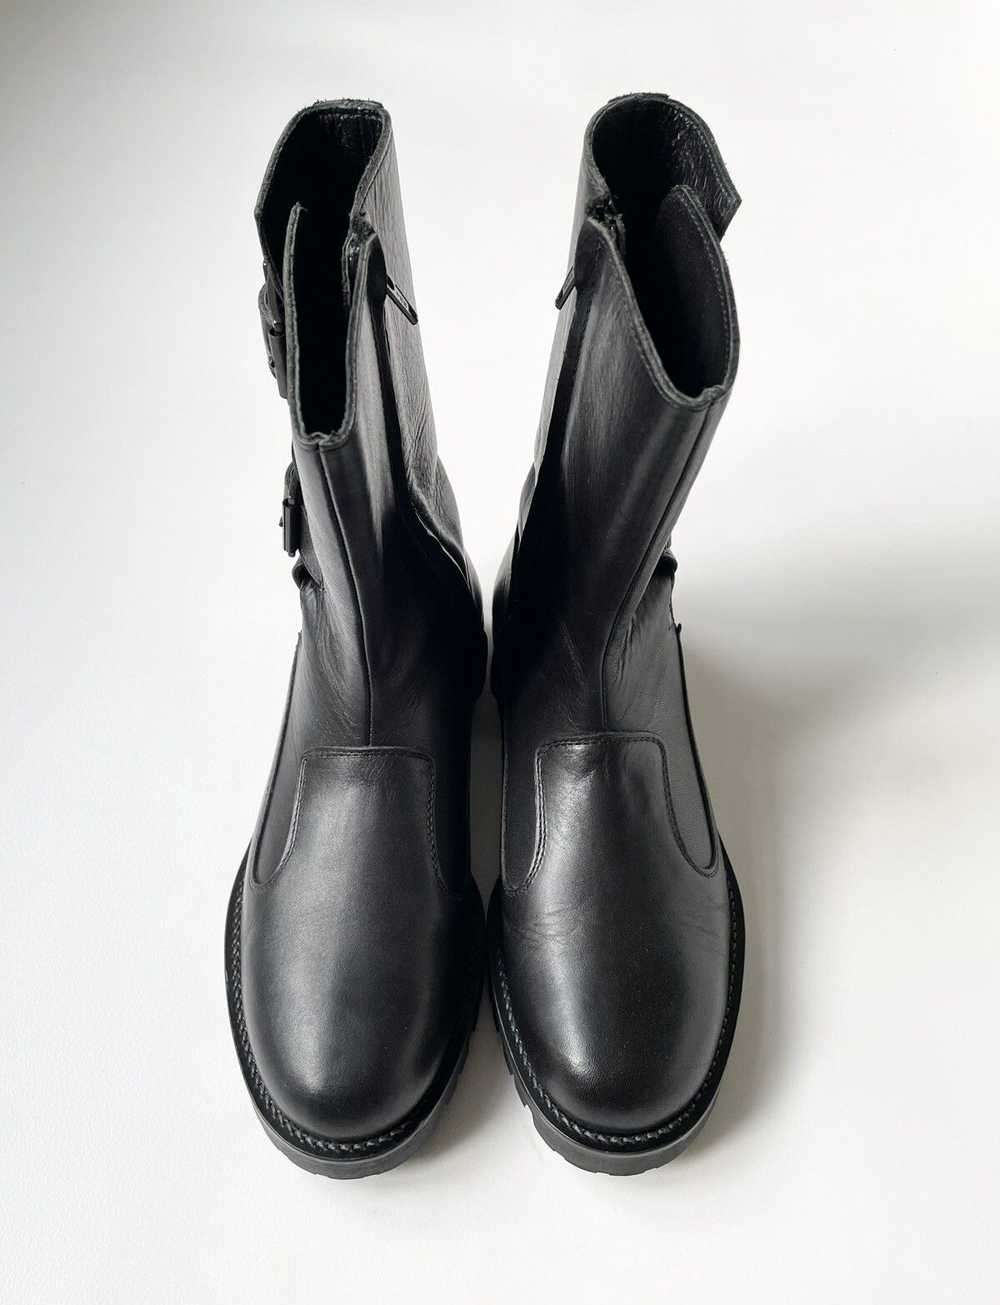 Yohji Yamamoto A/W 11 Black Leather Biker Boots - image 4